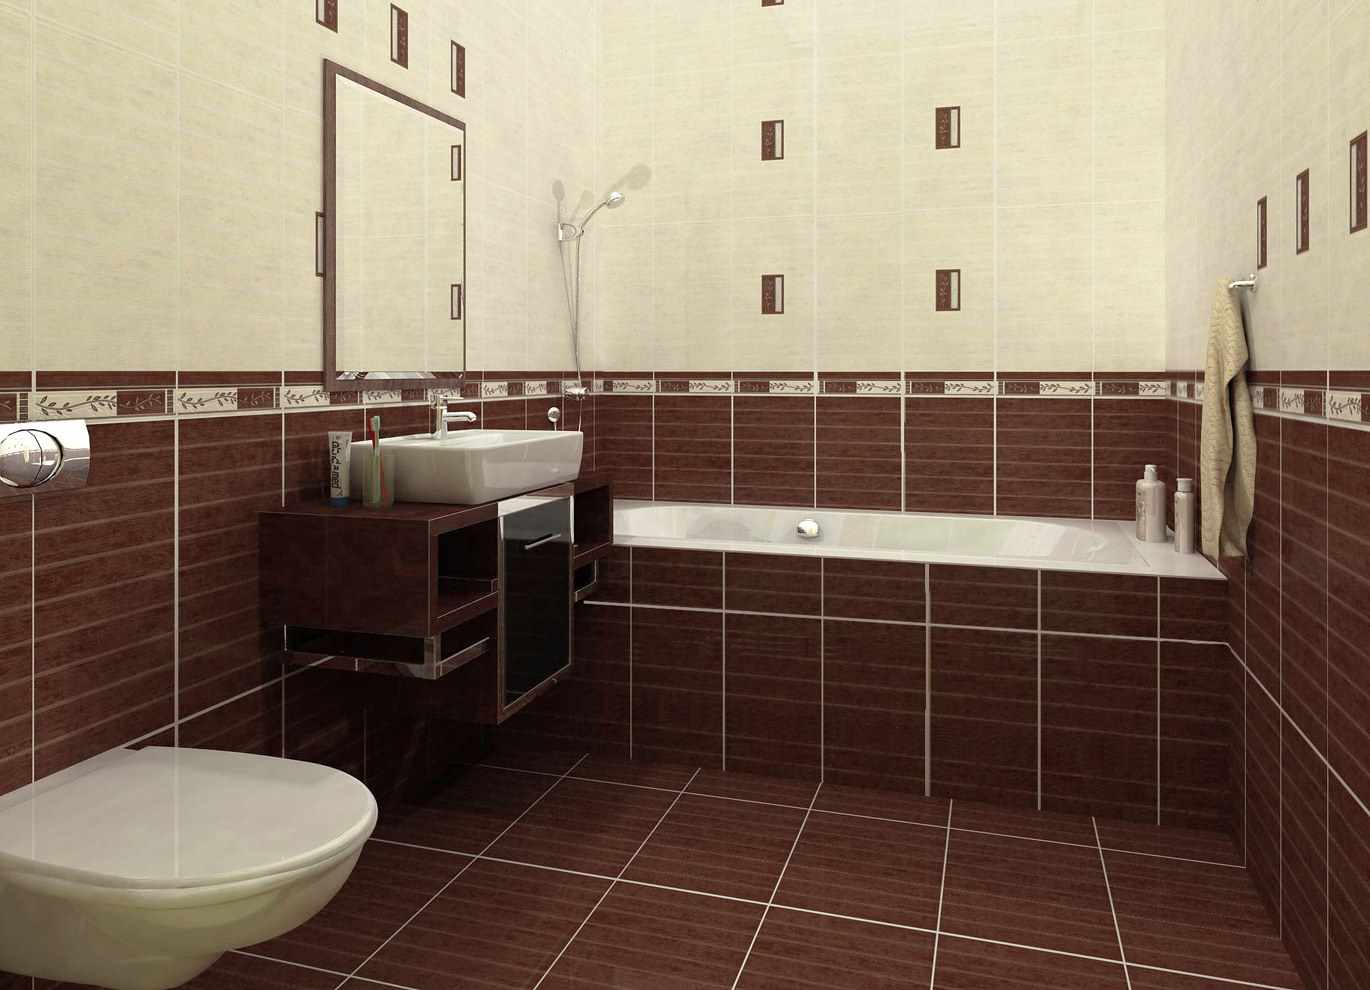 Un exemple d'un beau design d'une salle de bain avec carrelage